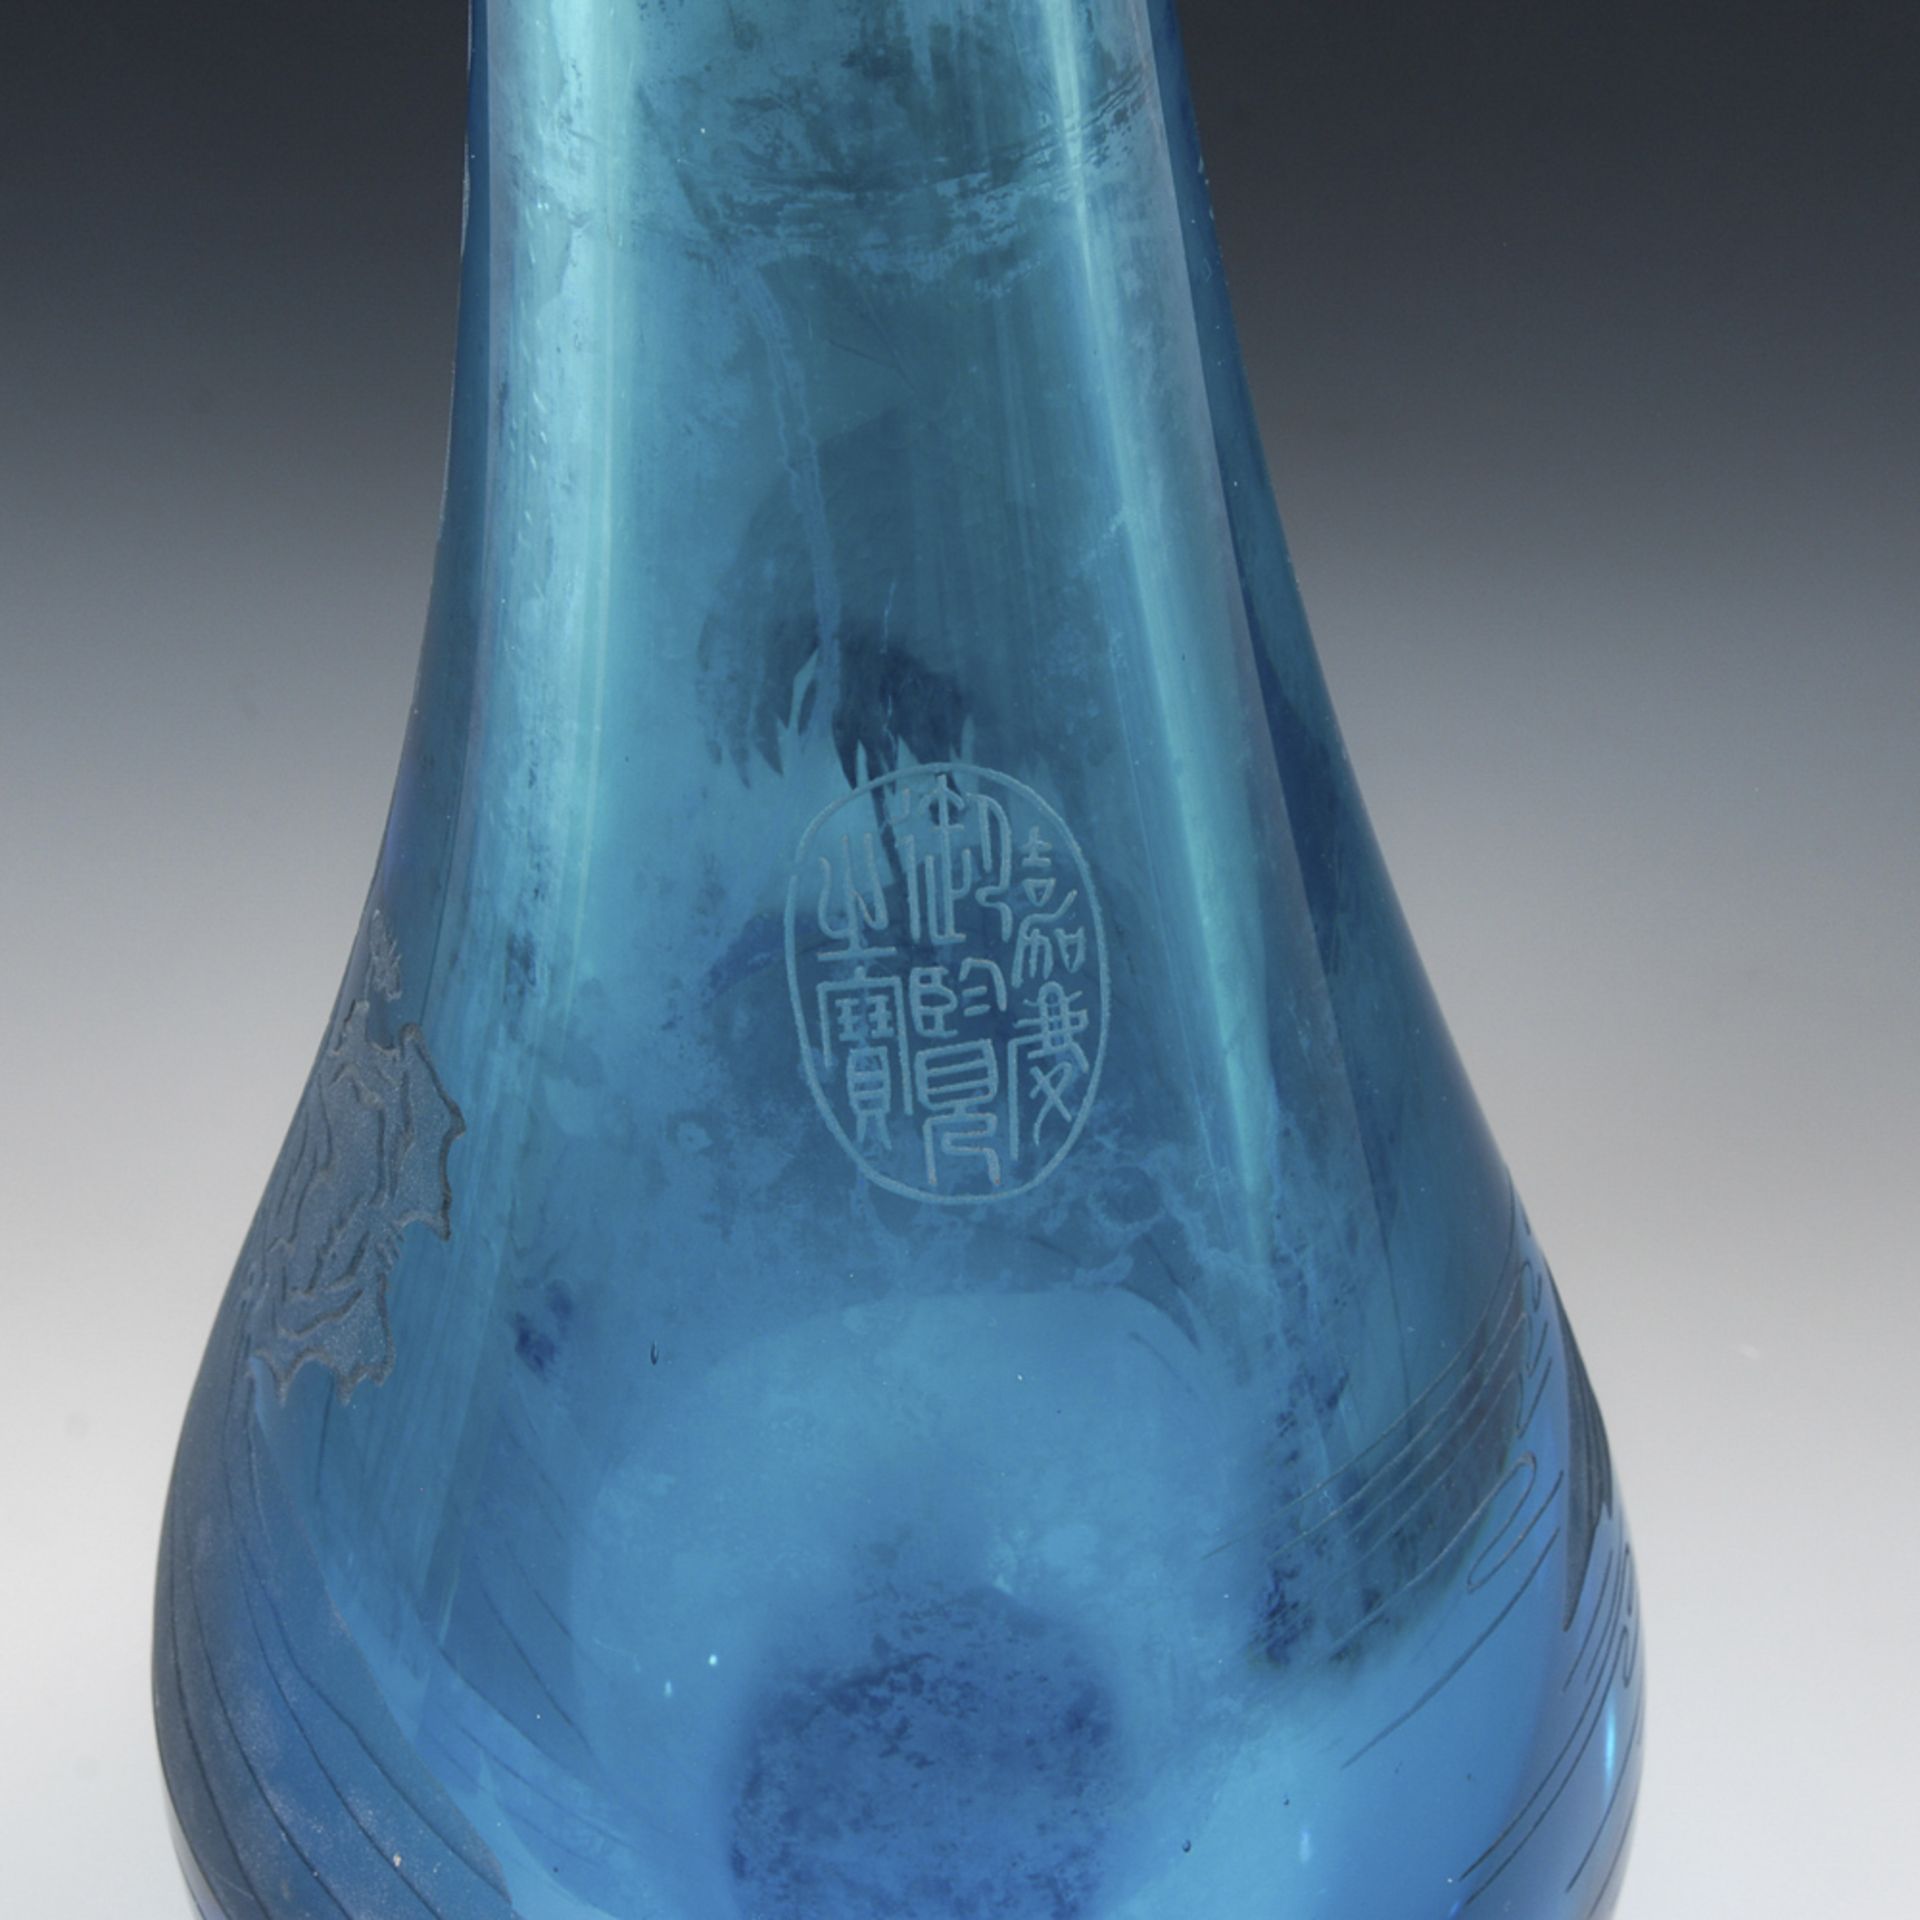 Türkisblaue Glasvase mit Kranichmotiv.China, um 1900, gemarkt. H 48 cm. Gewicht: 6,5 kg. Tropfenform - Image 2 of 3